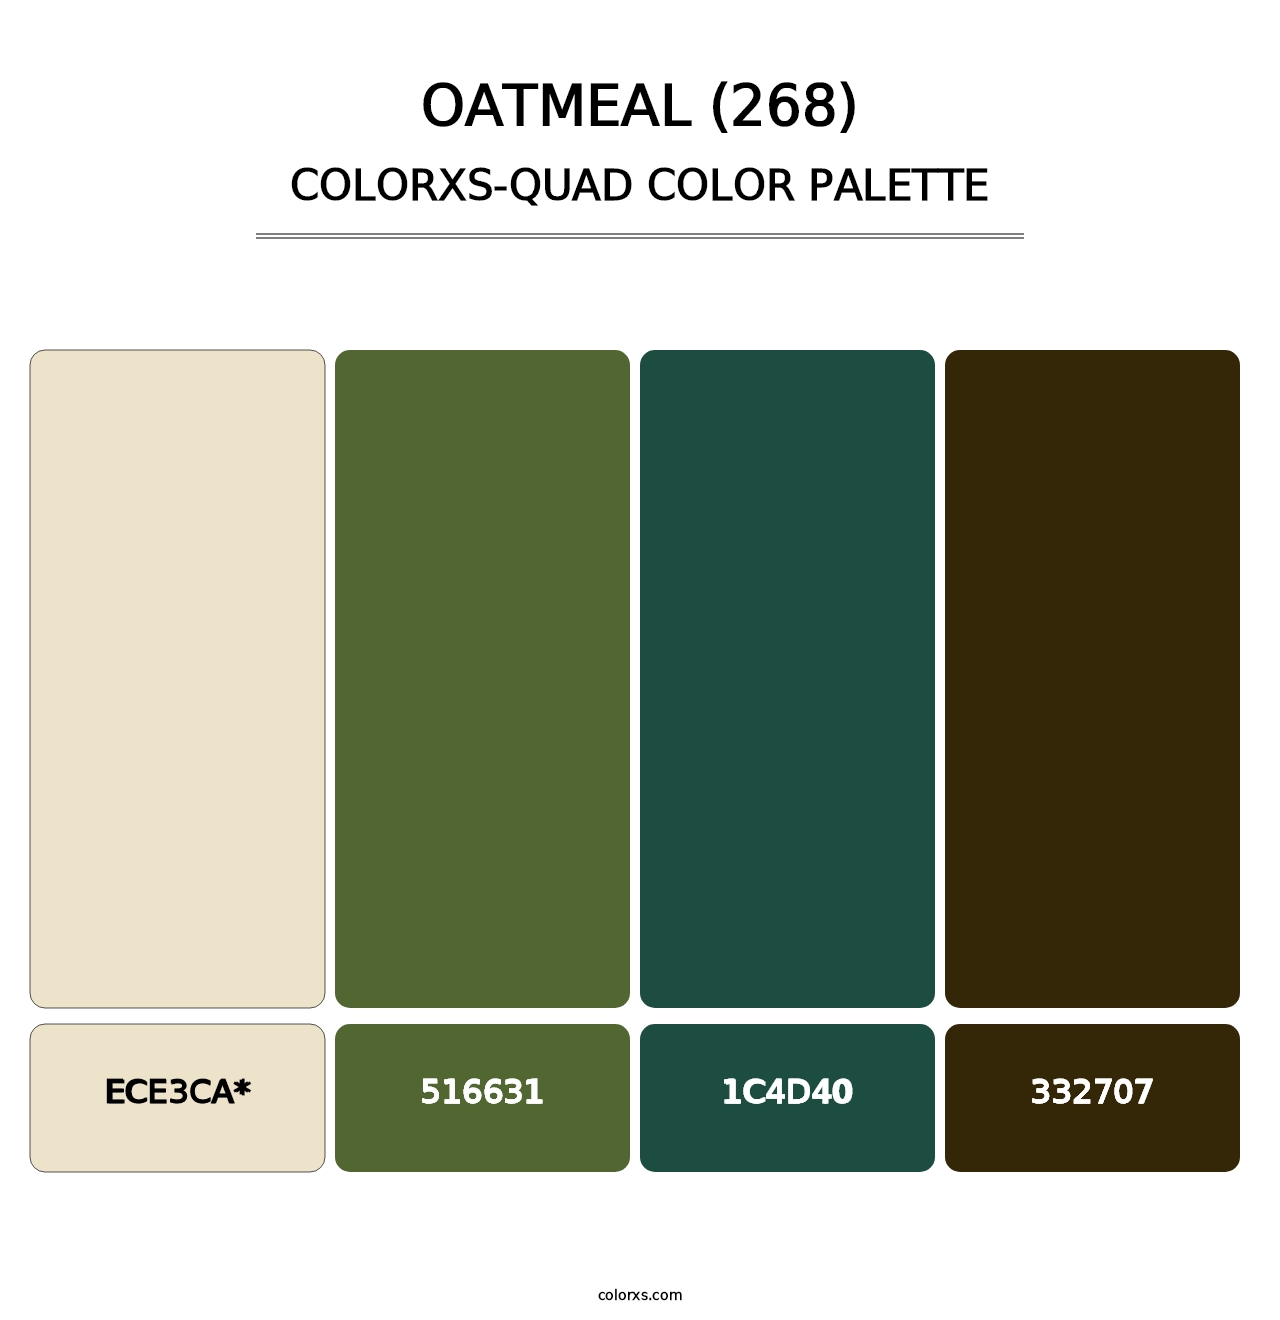 Oatmeal (268) - Colorxs Quad Palette